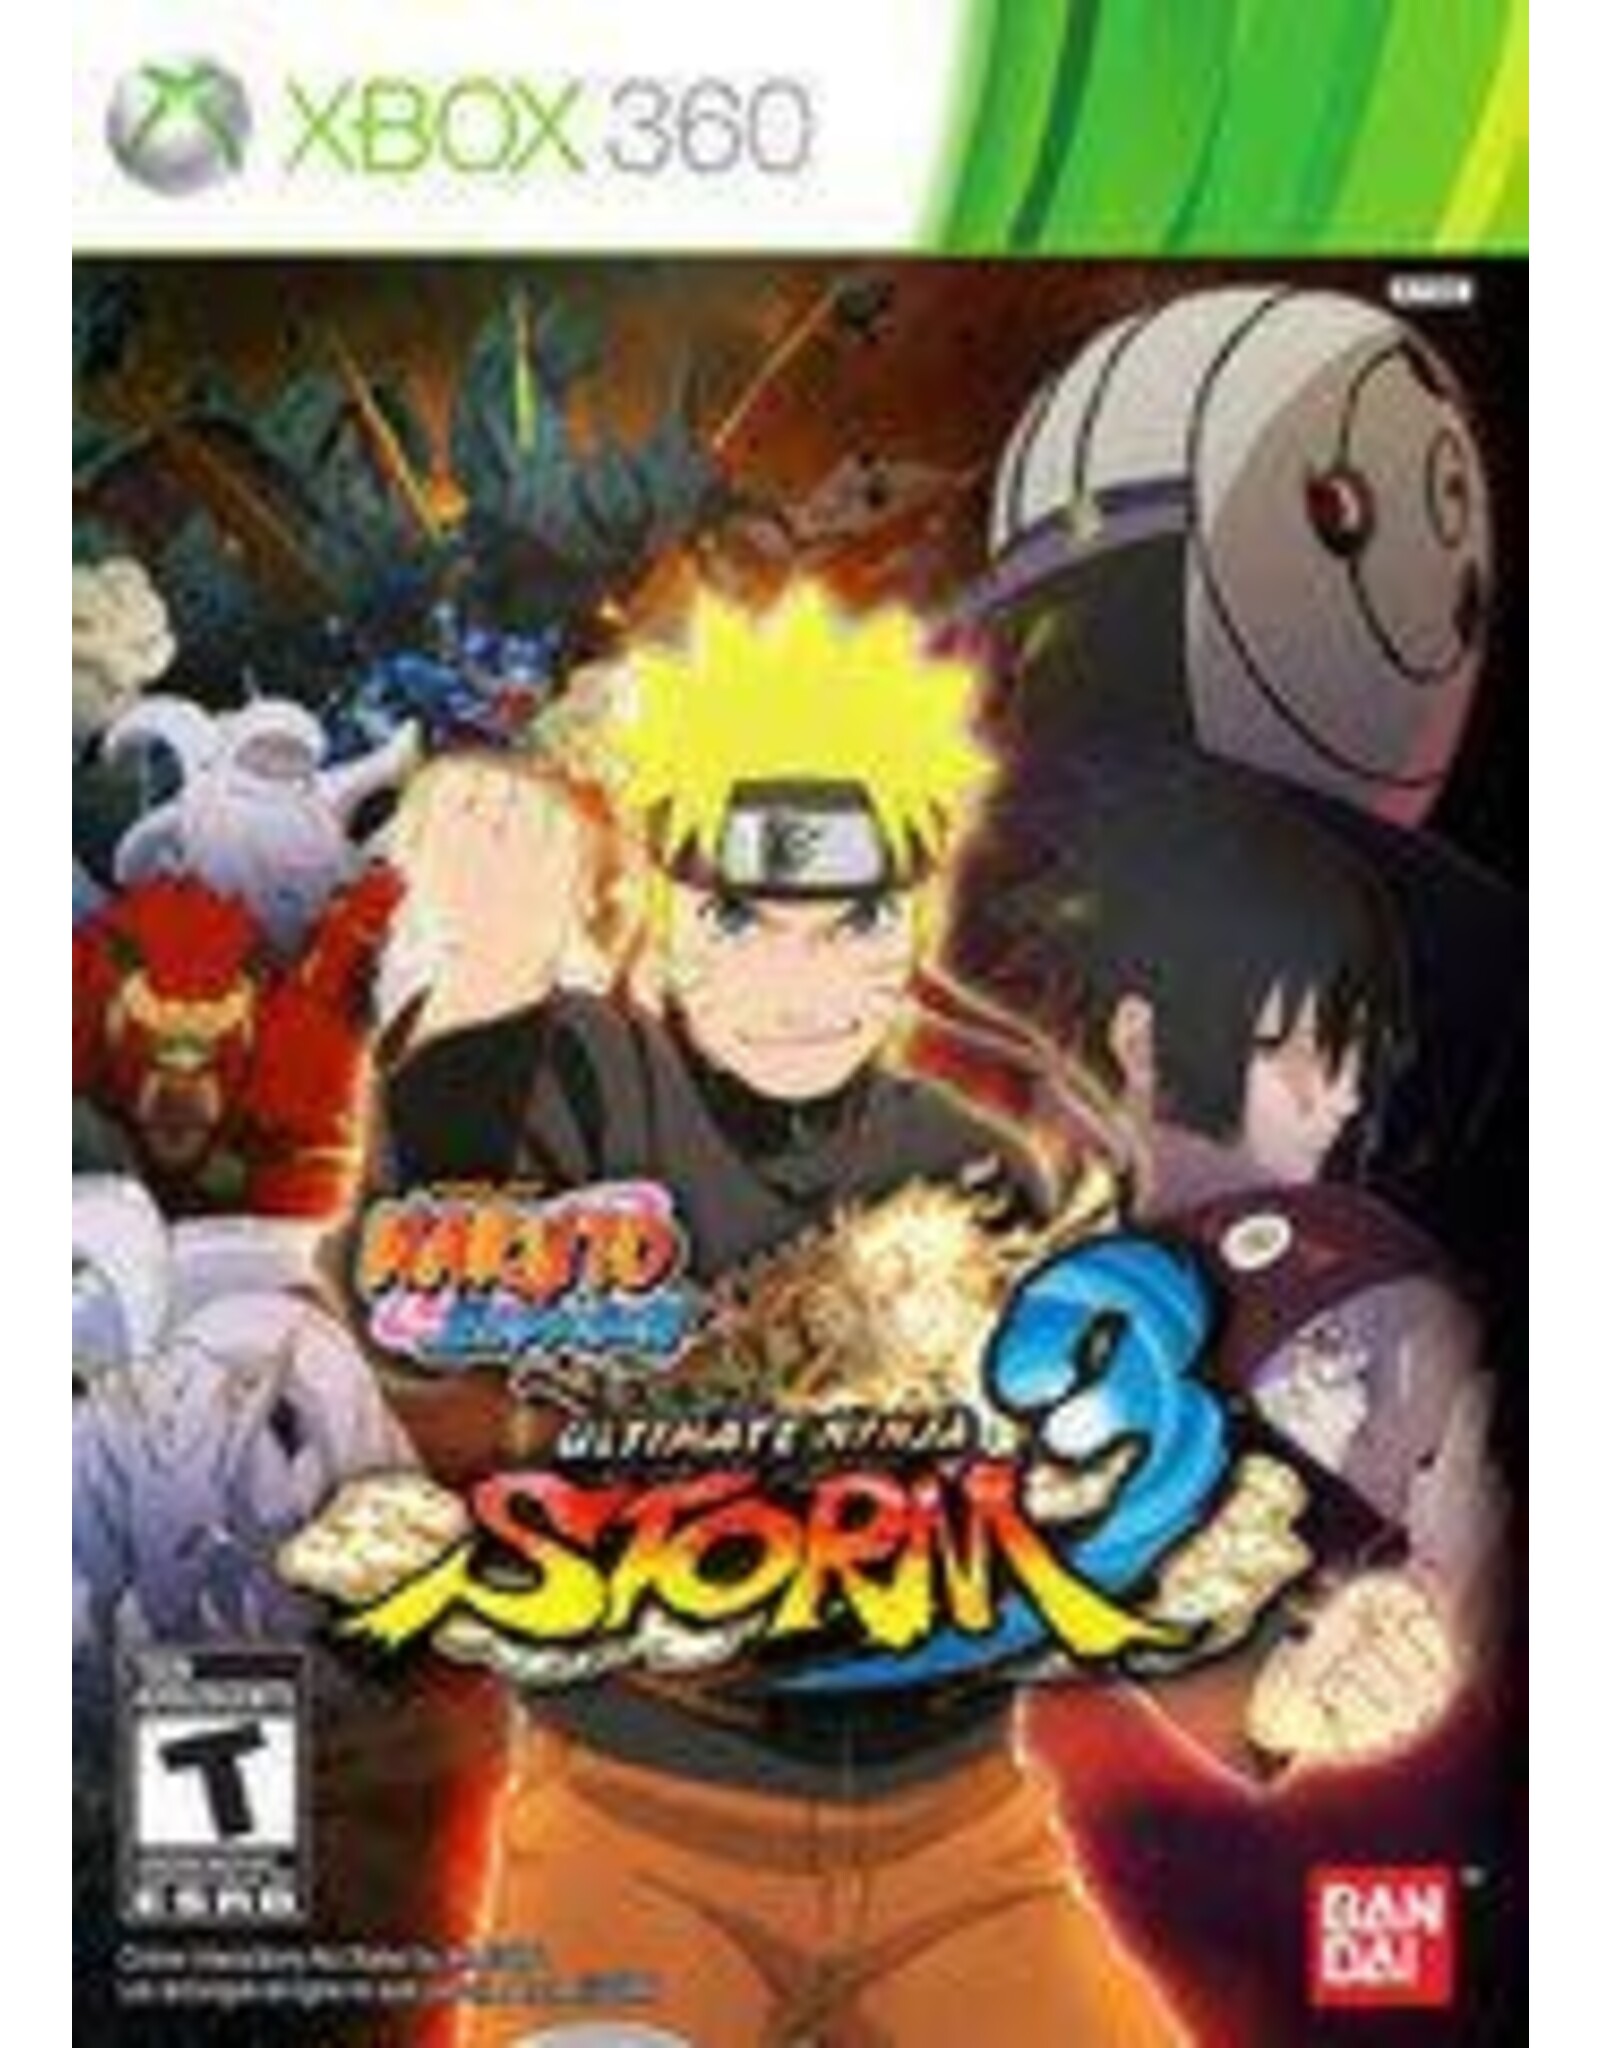 Xbox 360 Naruto Shippuden Ultimate Ninja Storm 3 (No Manual, No DLC or Trading Card)